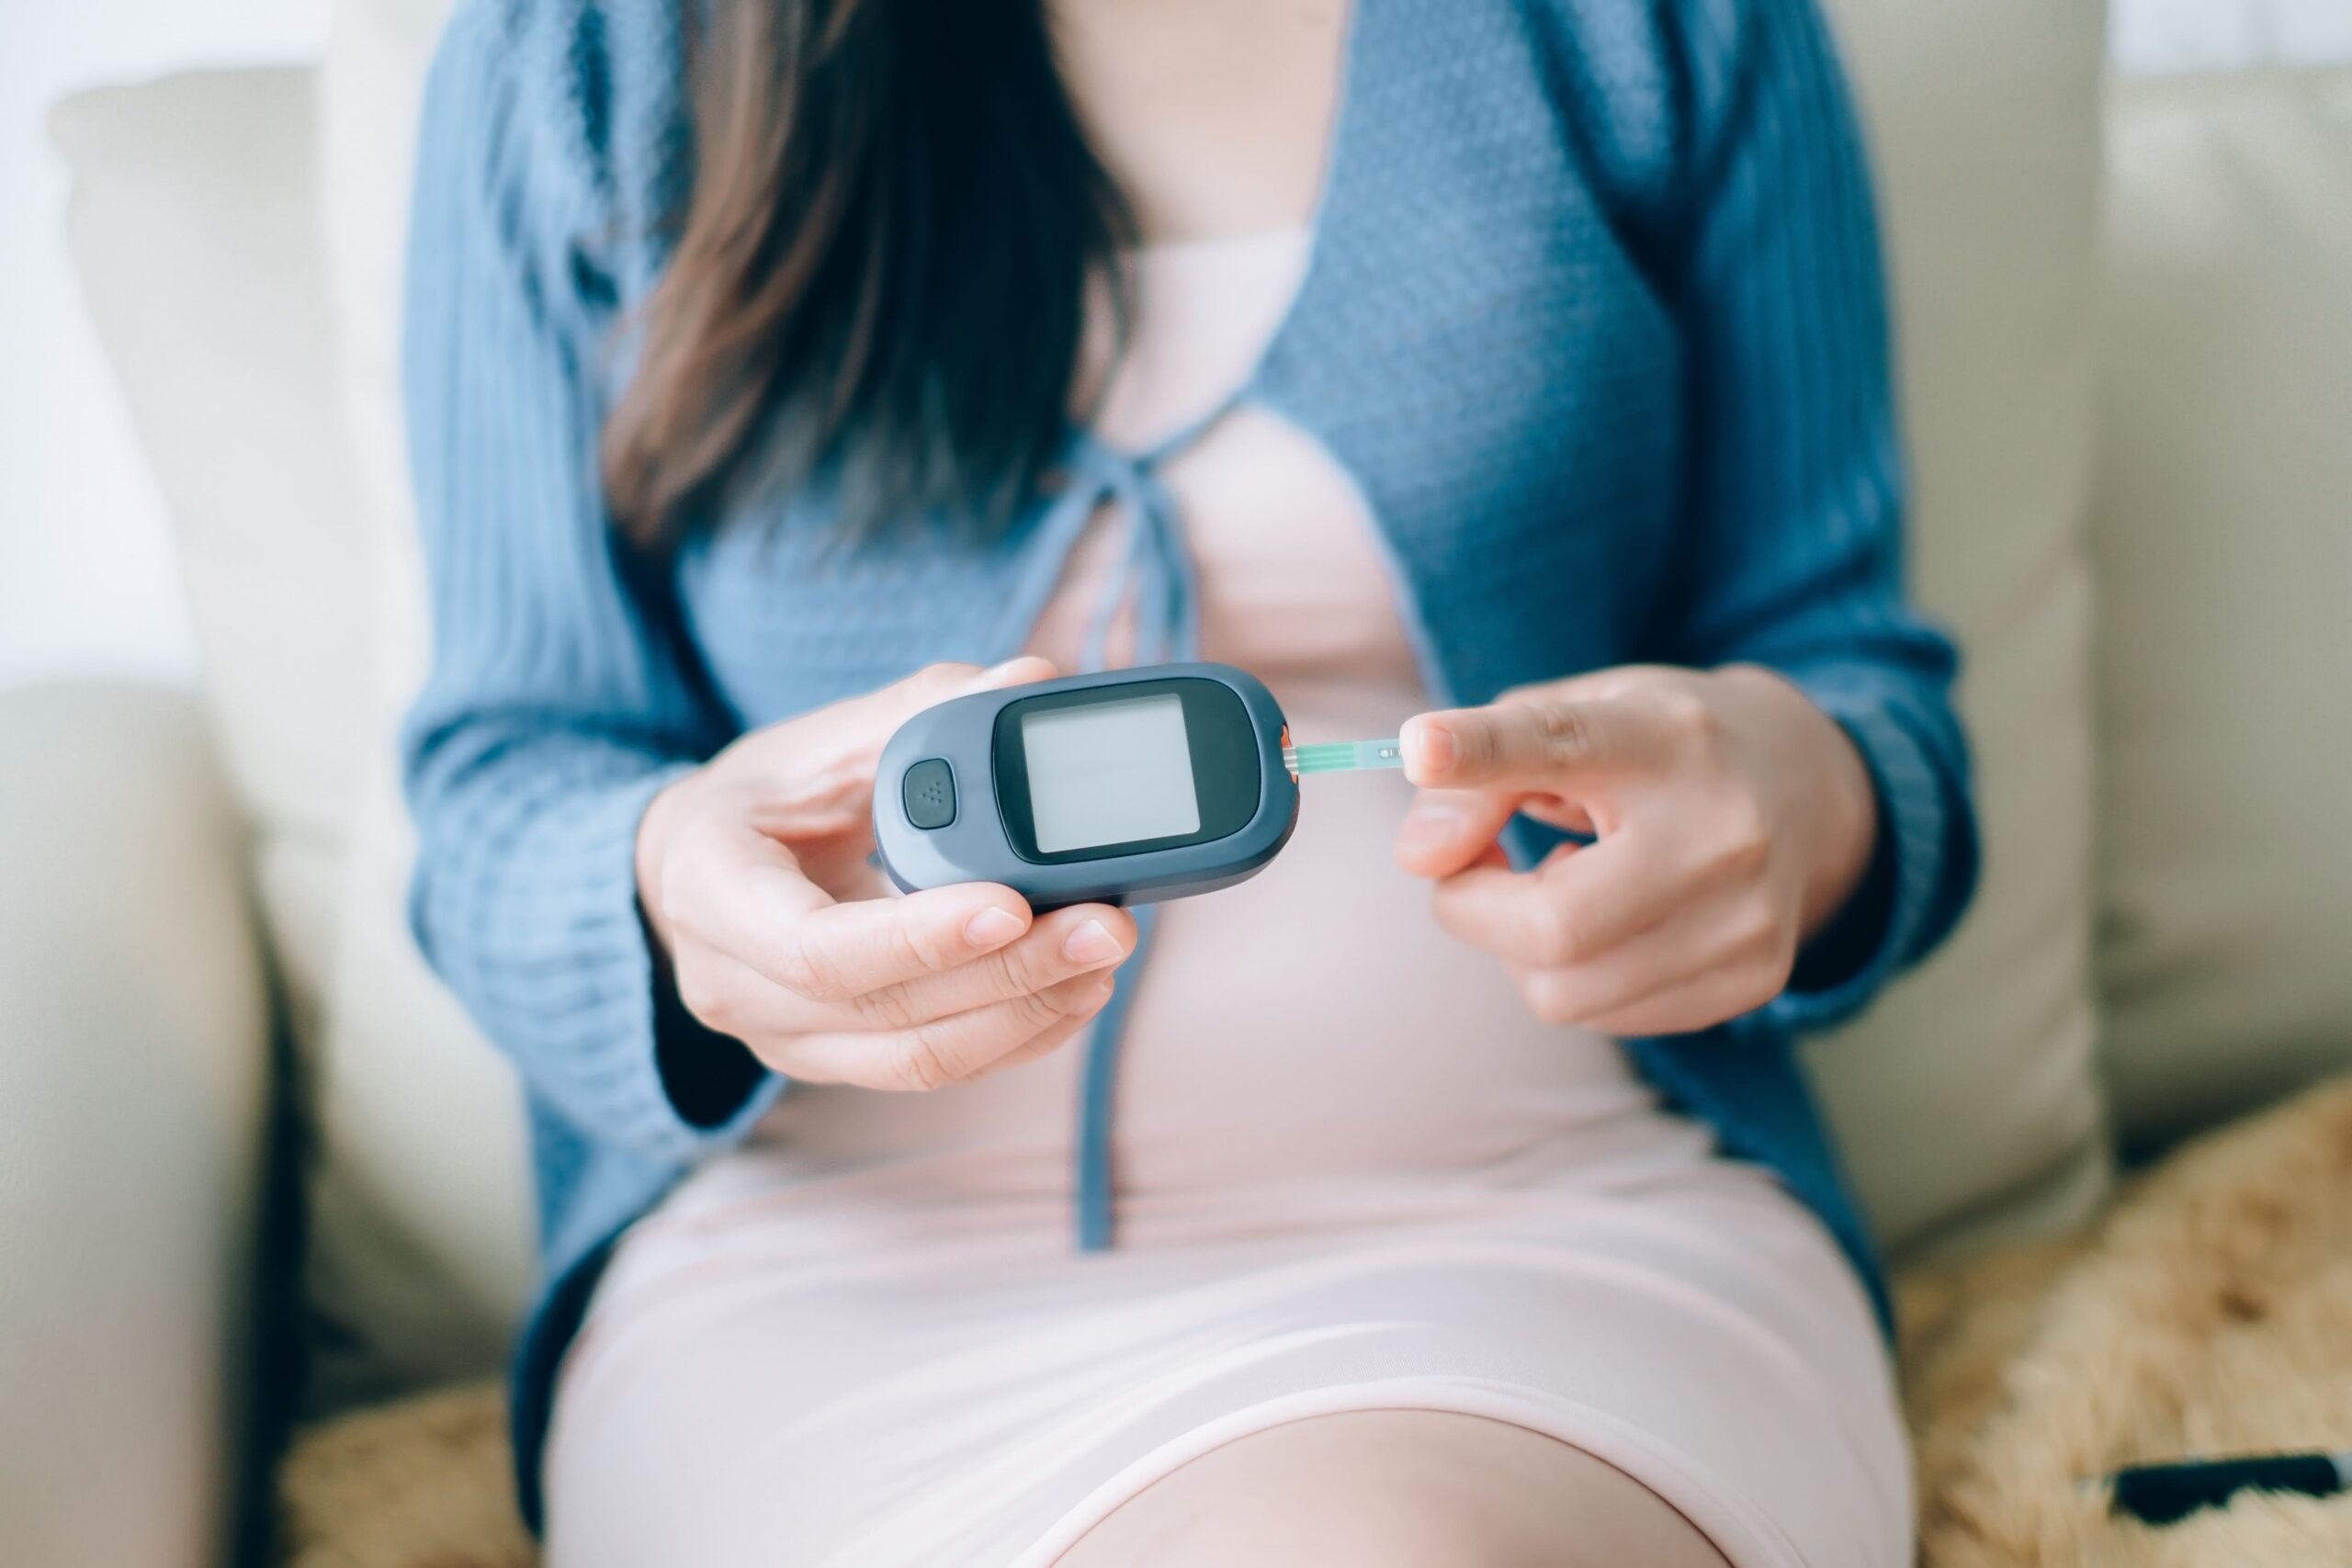 Diabetes gestacional en el embarazo